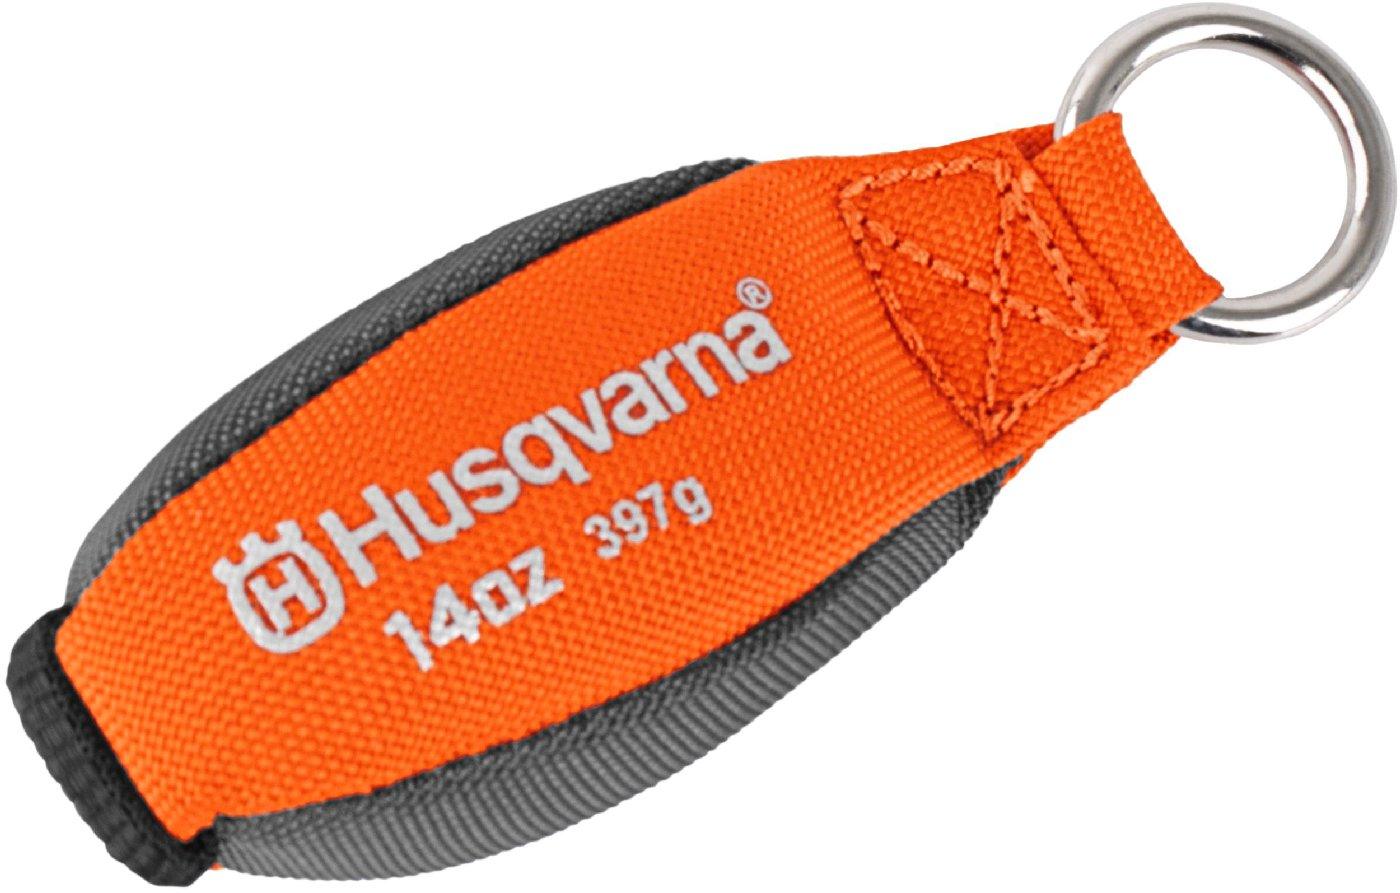 Husqvarna Wurfgewicht 397 gramm 596 93 58-11 - MotorLand.at